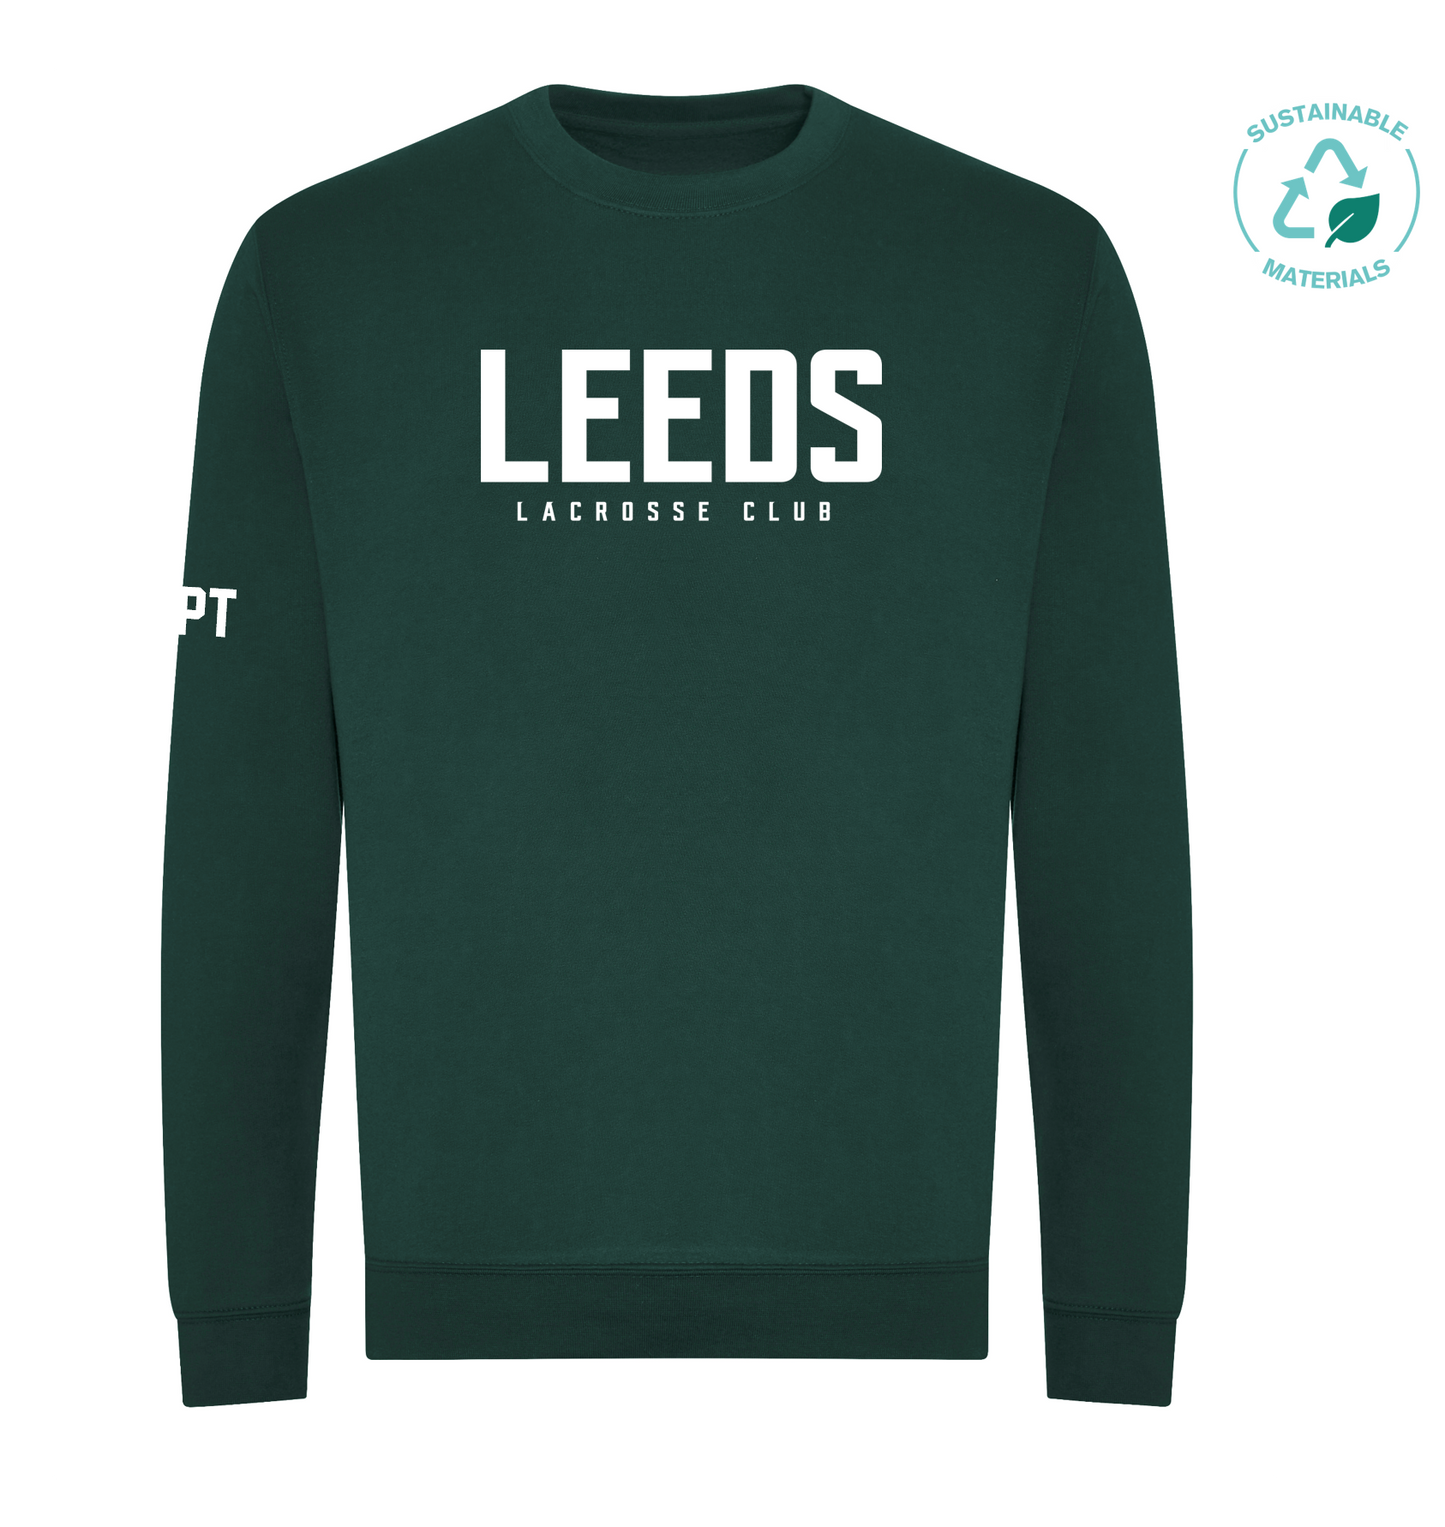 Leeds LC Organic Sweatshirt